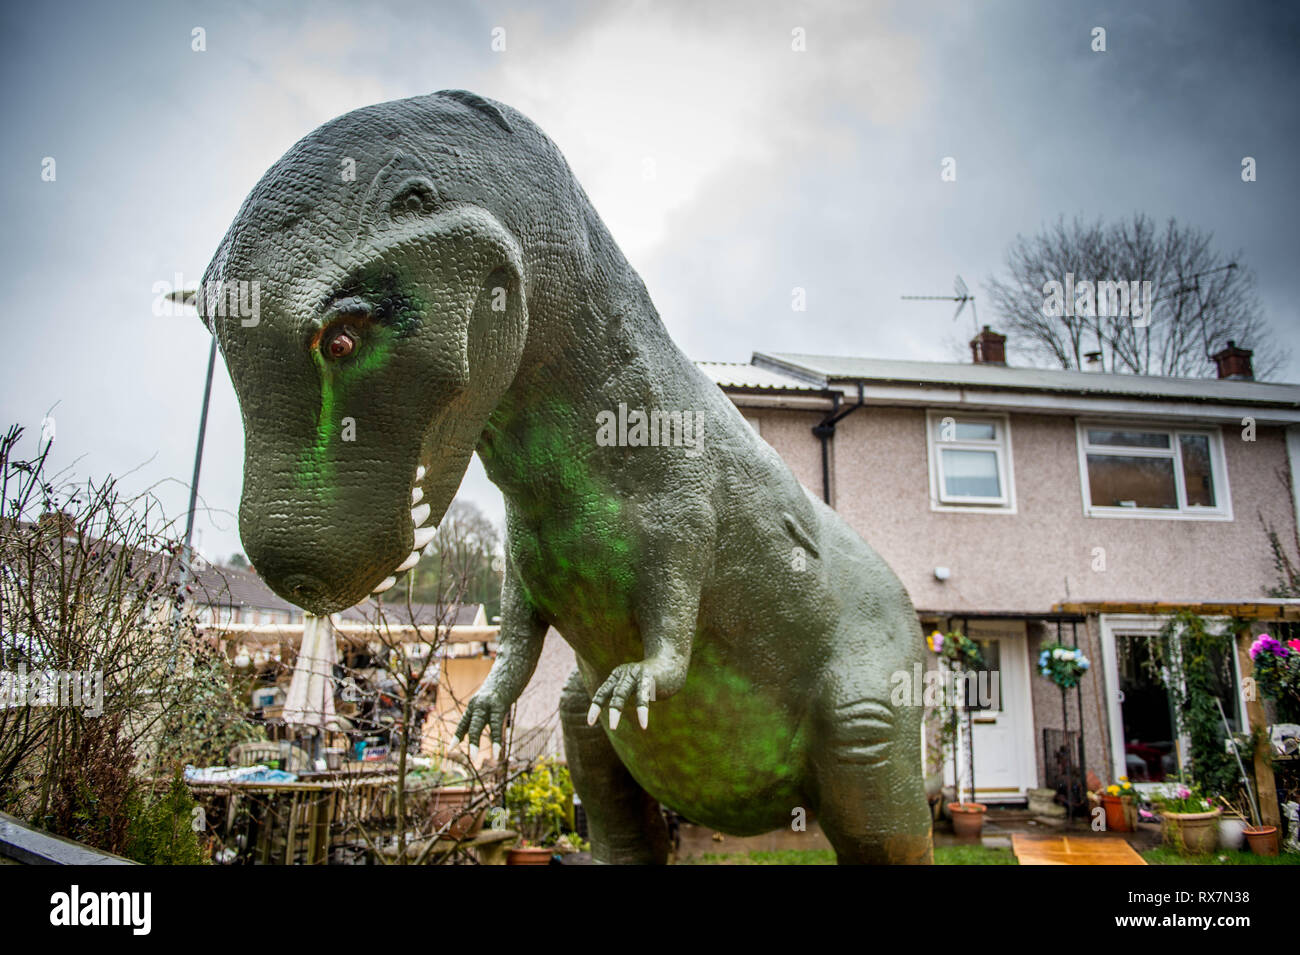 The Dinosaur House